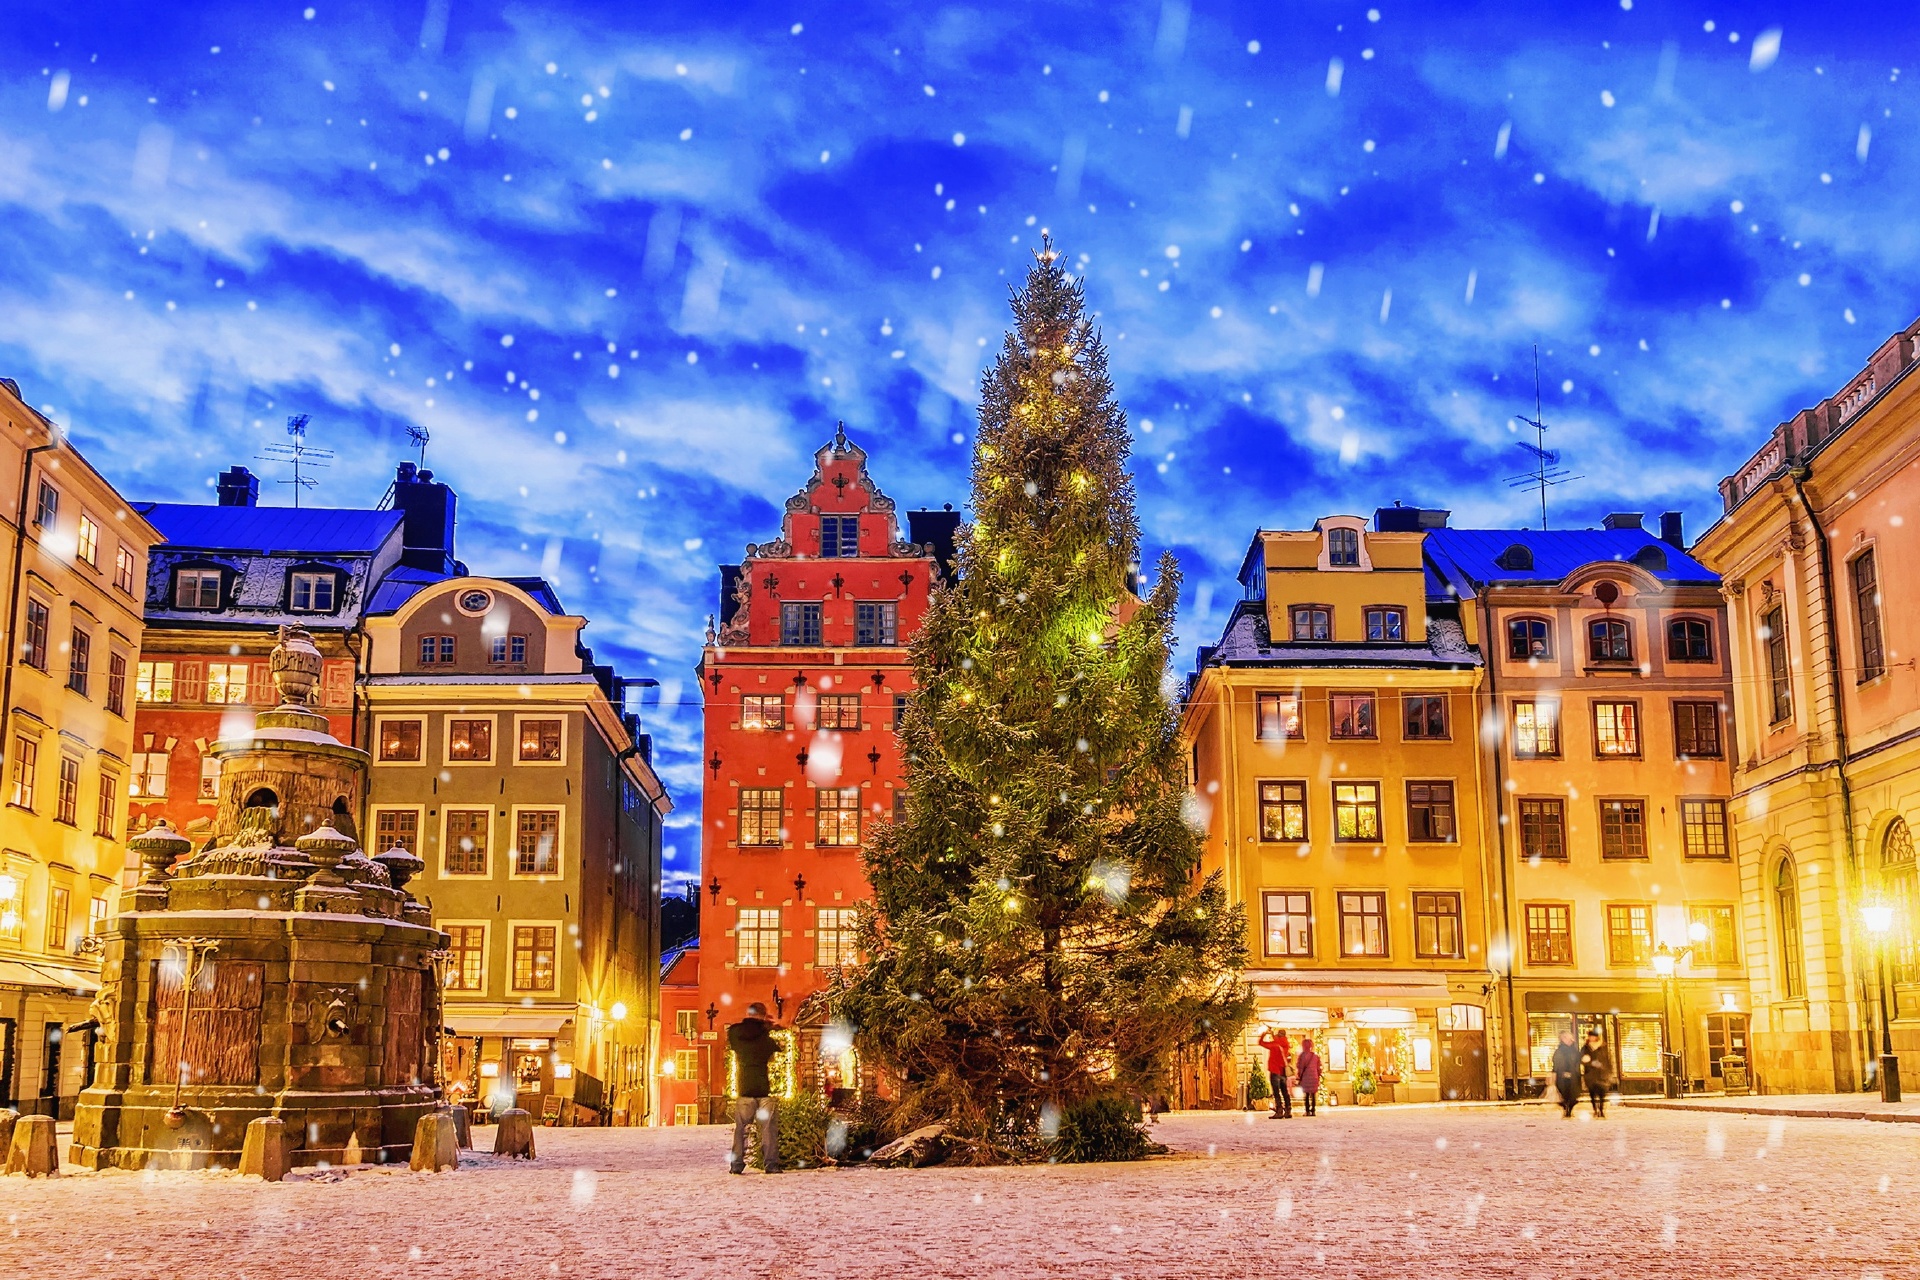 ストックホルムのクリスマス風景 スウェーデンの冬の風景 北欧の美しい風景 Hokuo Guide Com S 北欧の風景